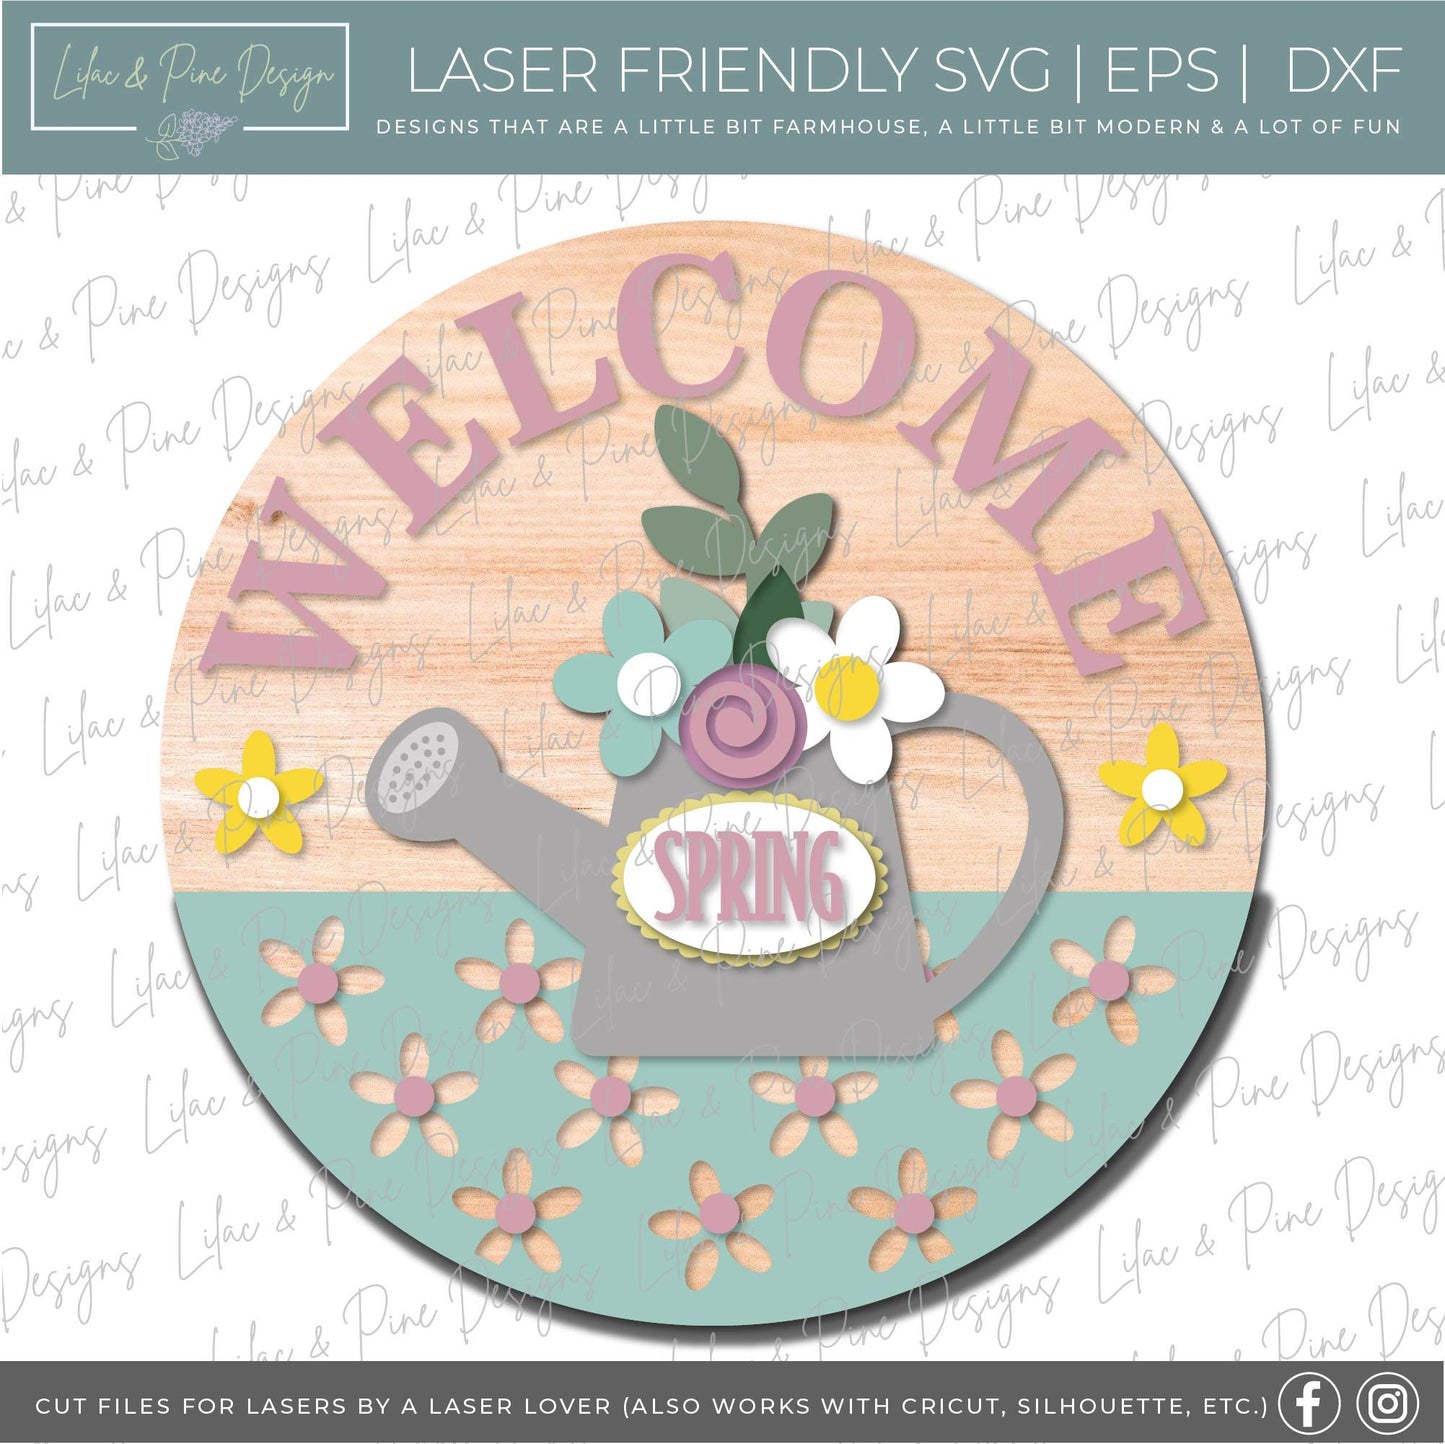 Welcome Spring door hanger SVG, Spring porch sign, Welcome sign SVG, Spring Welcome SVG, Spring decor, Glowforge Svg, laser cut file